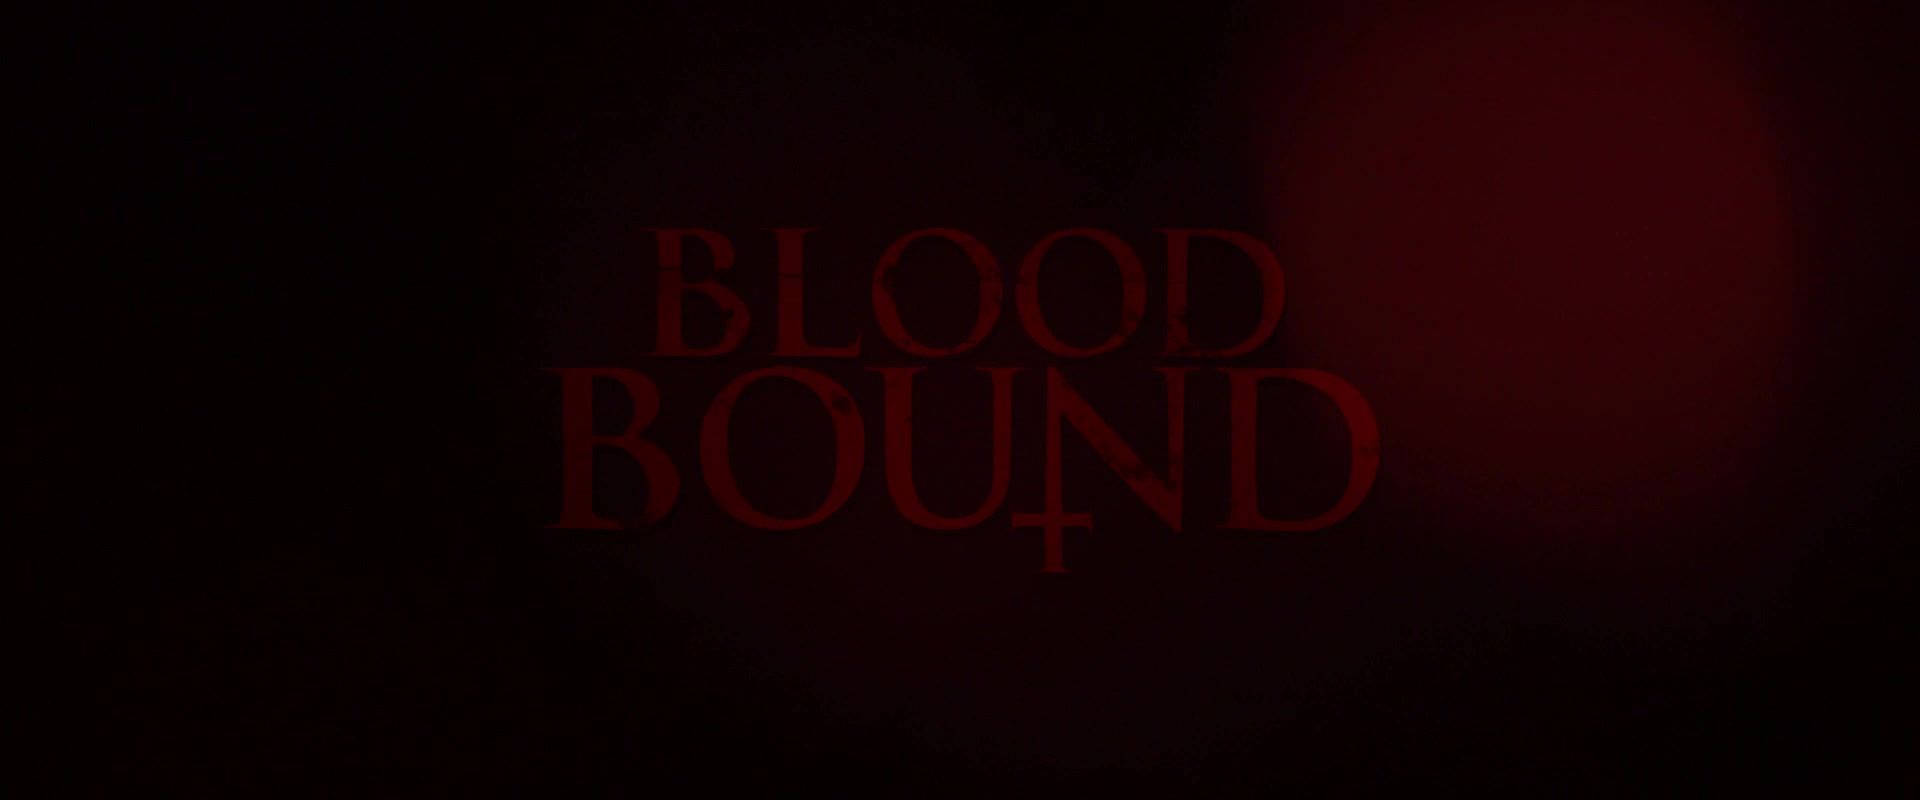 DaGFs Eden Brolin nude - Blood Bound (2019) Latino